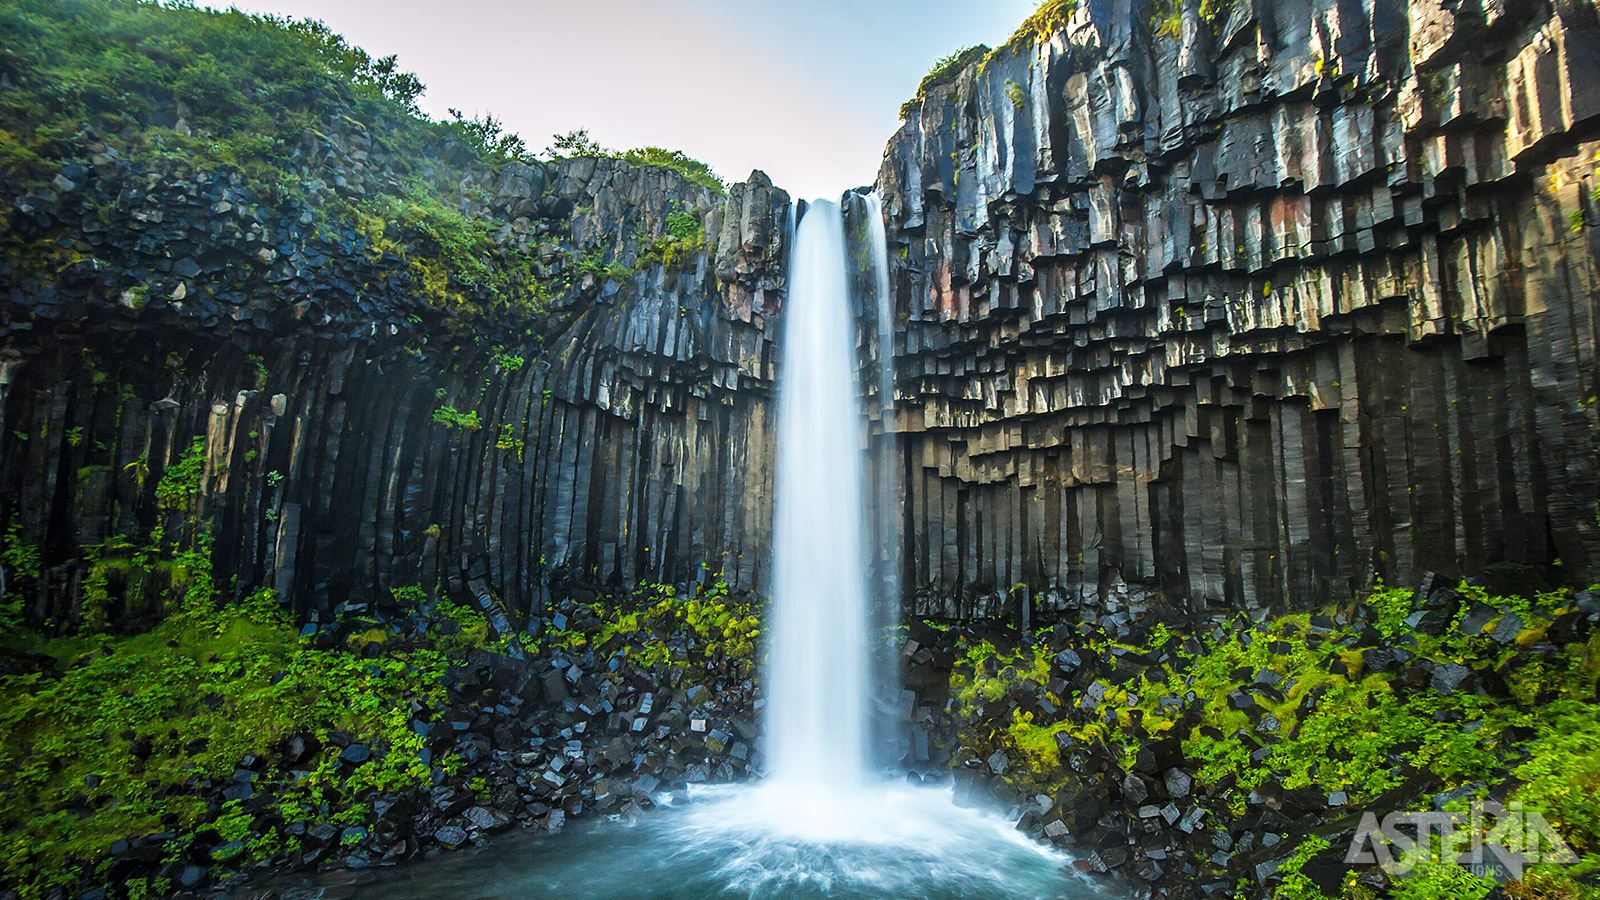 De Svartifoss of ’zwarte waterval’ is een mooie waterval van 20m hoog, die omgeven wordt door indrukwekkende kolommen van zwart basalt